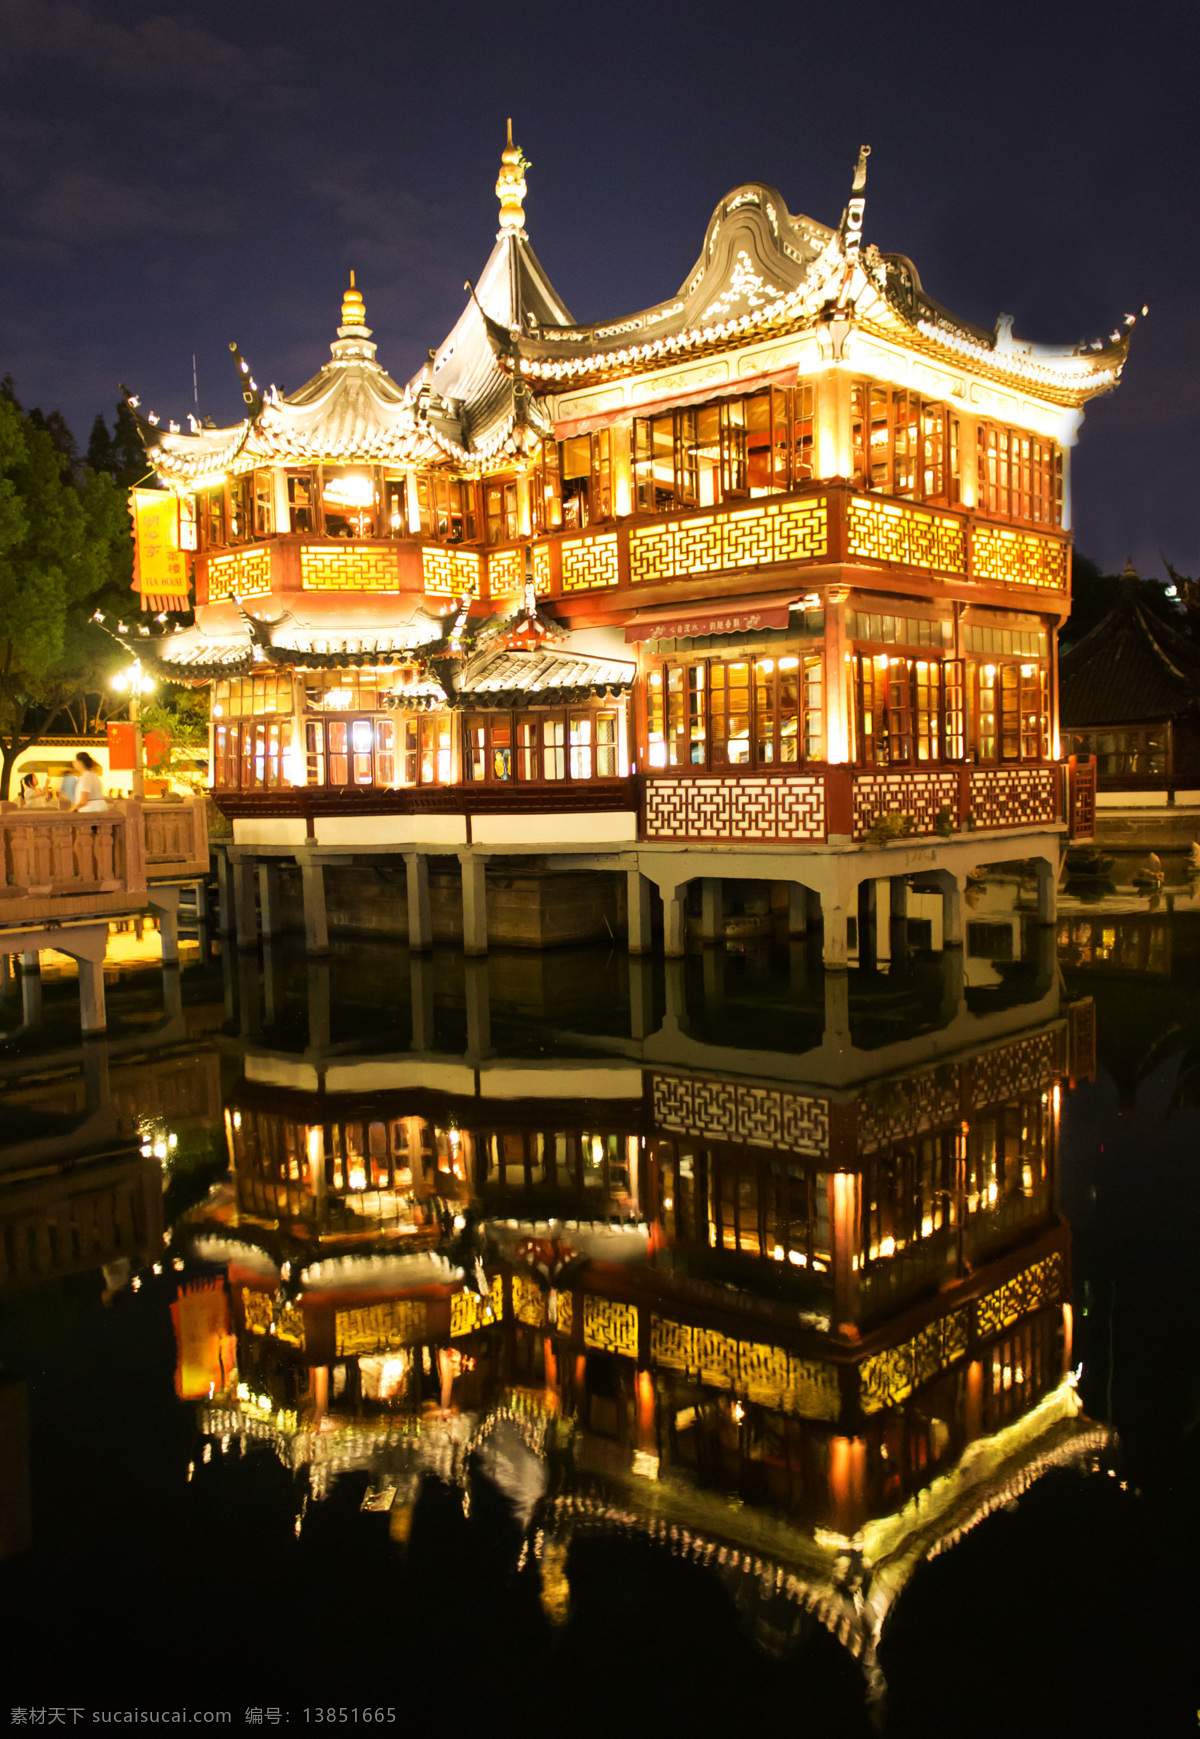 夜景 夜景城市 城市夜景 上海 上海夜景 旅游摄影 自然风景